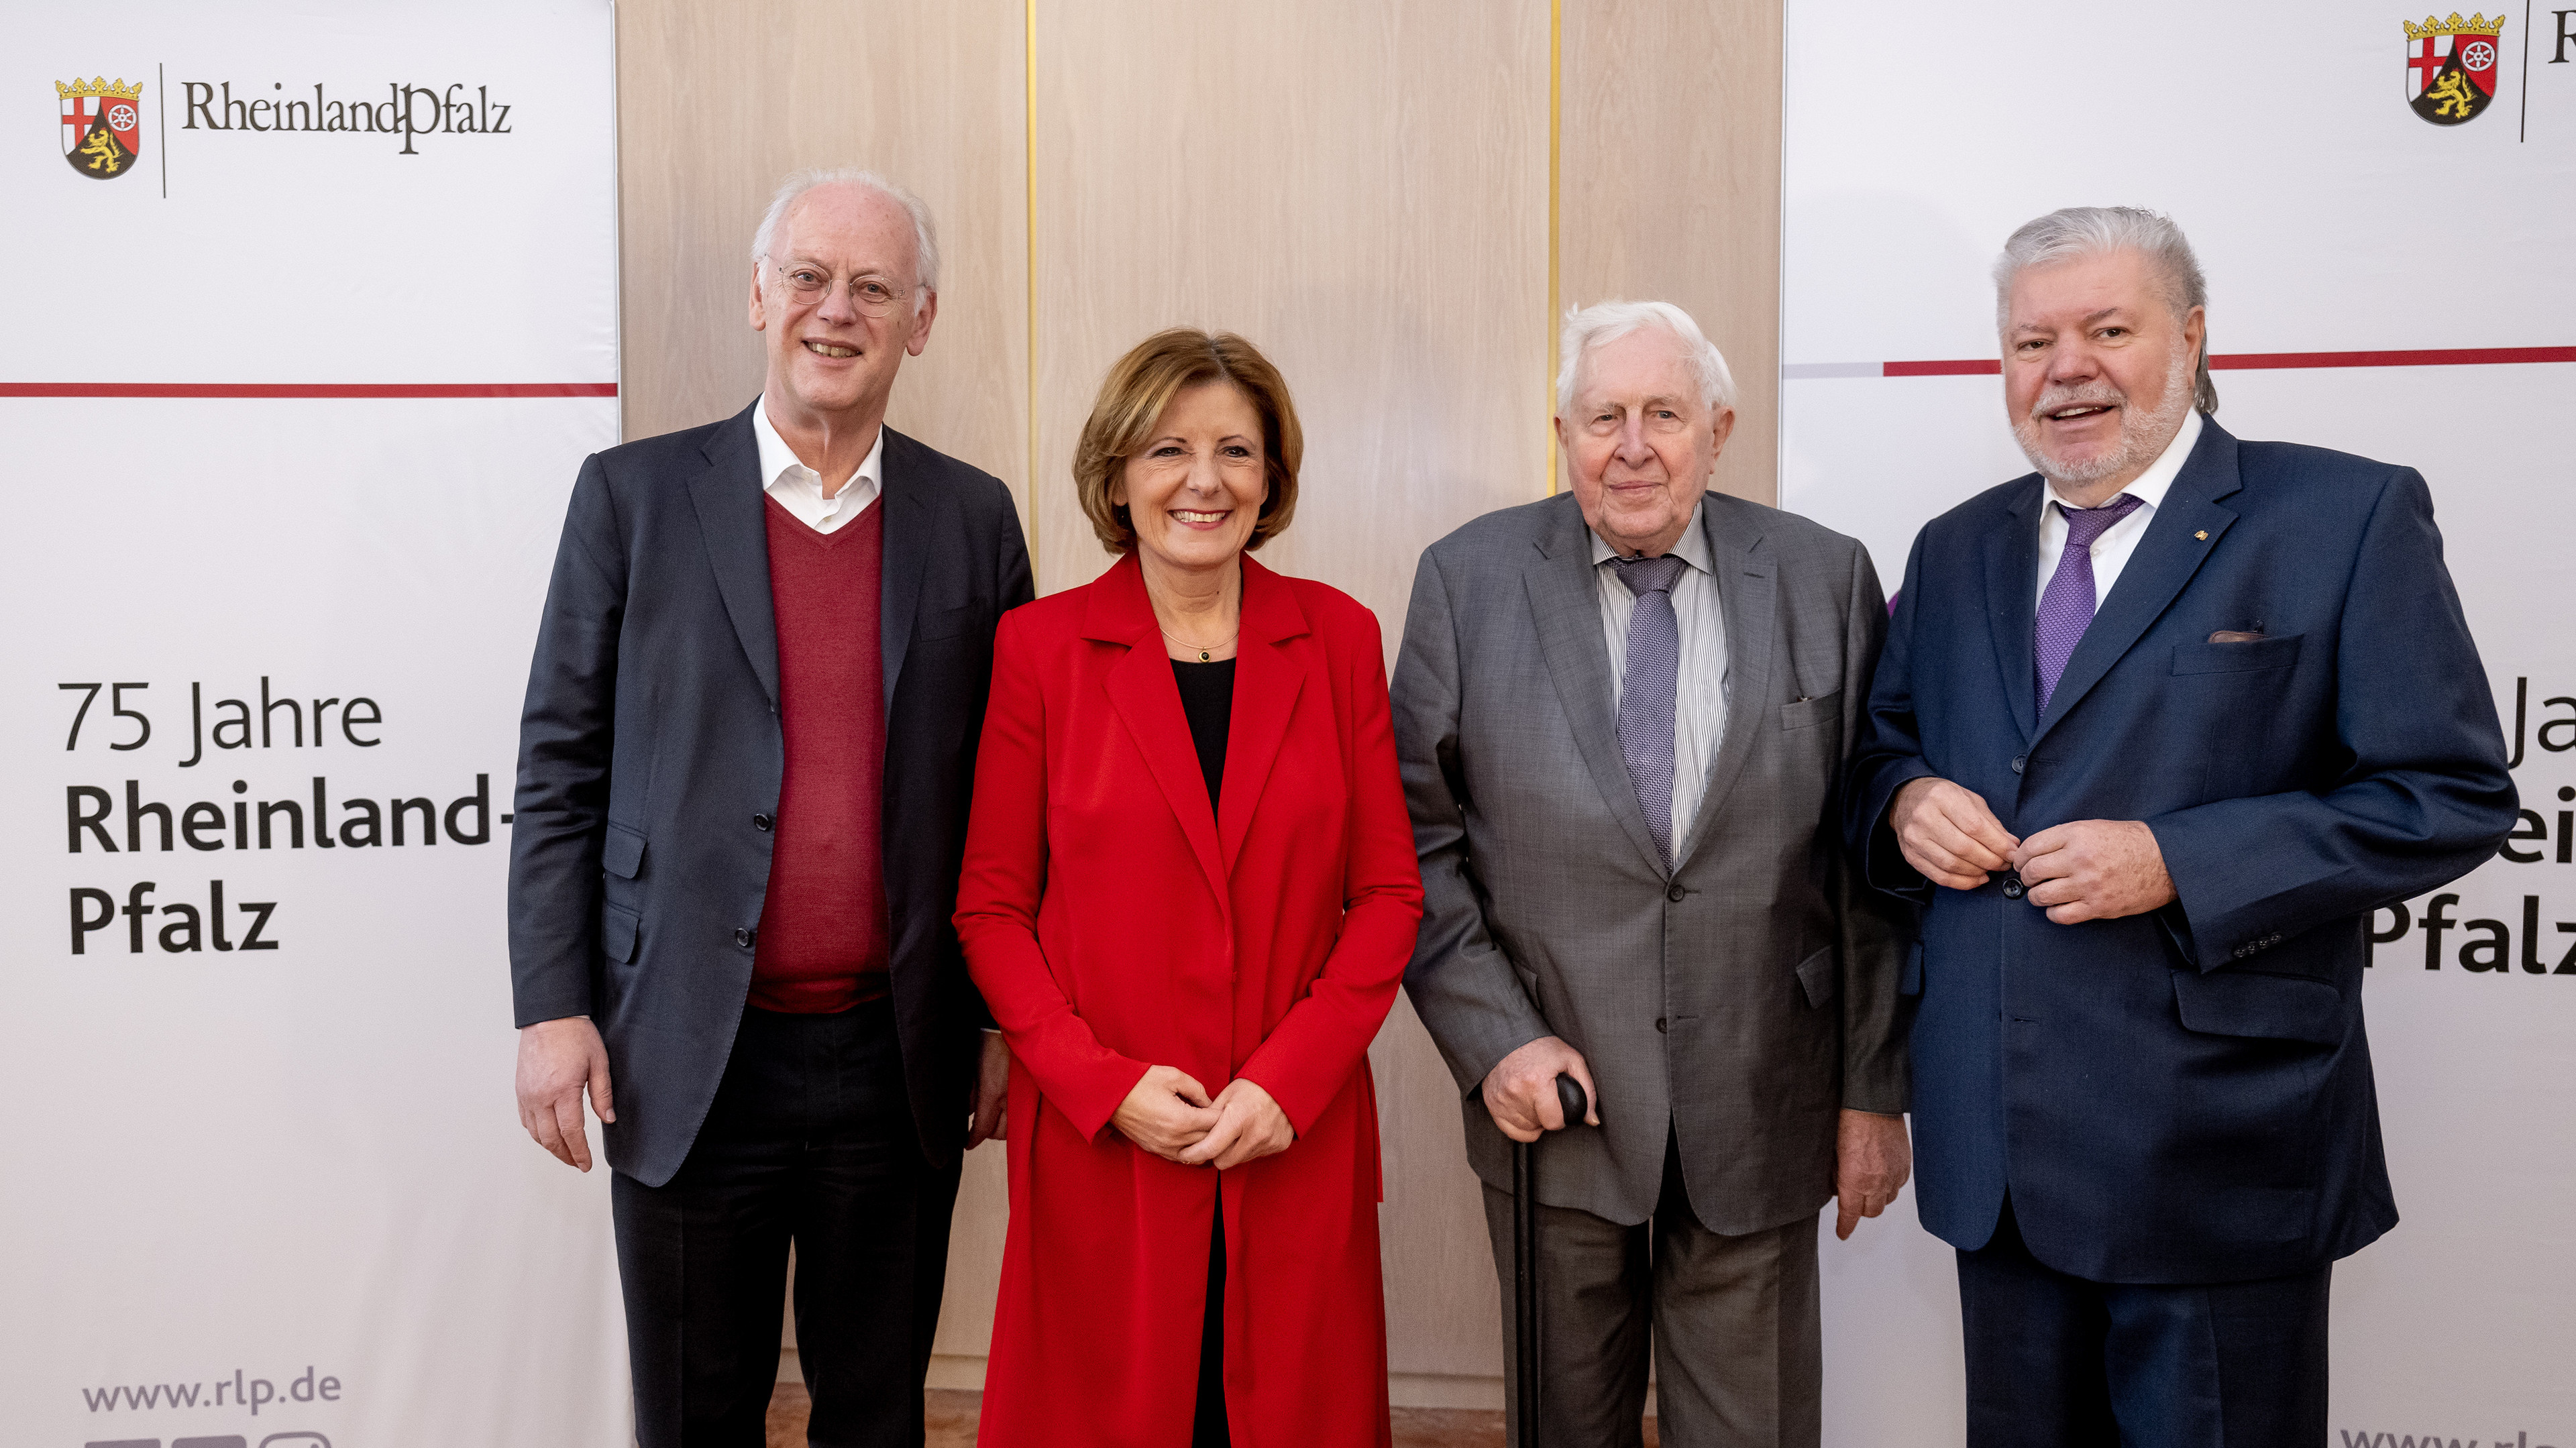 Malu Dreyer ist Nachfolgerin von Kurt Beck. Hier mit ihren weiteren Amtsvorgängern Rudolf Scharping und Bernhard Vogel.